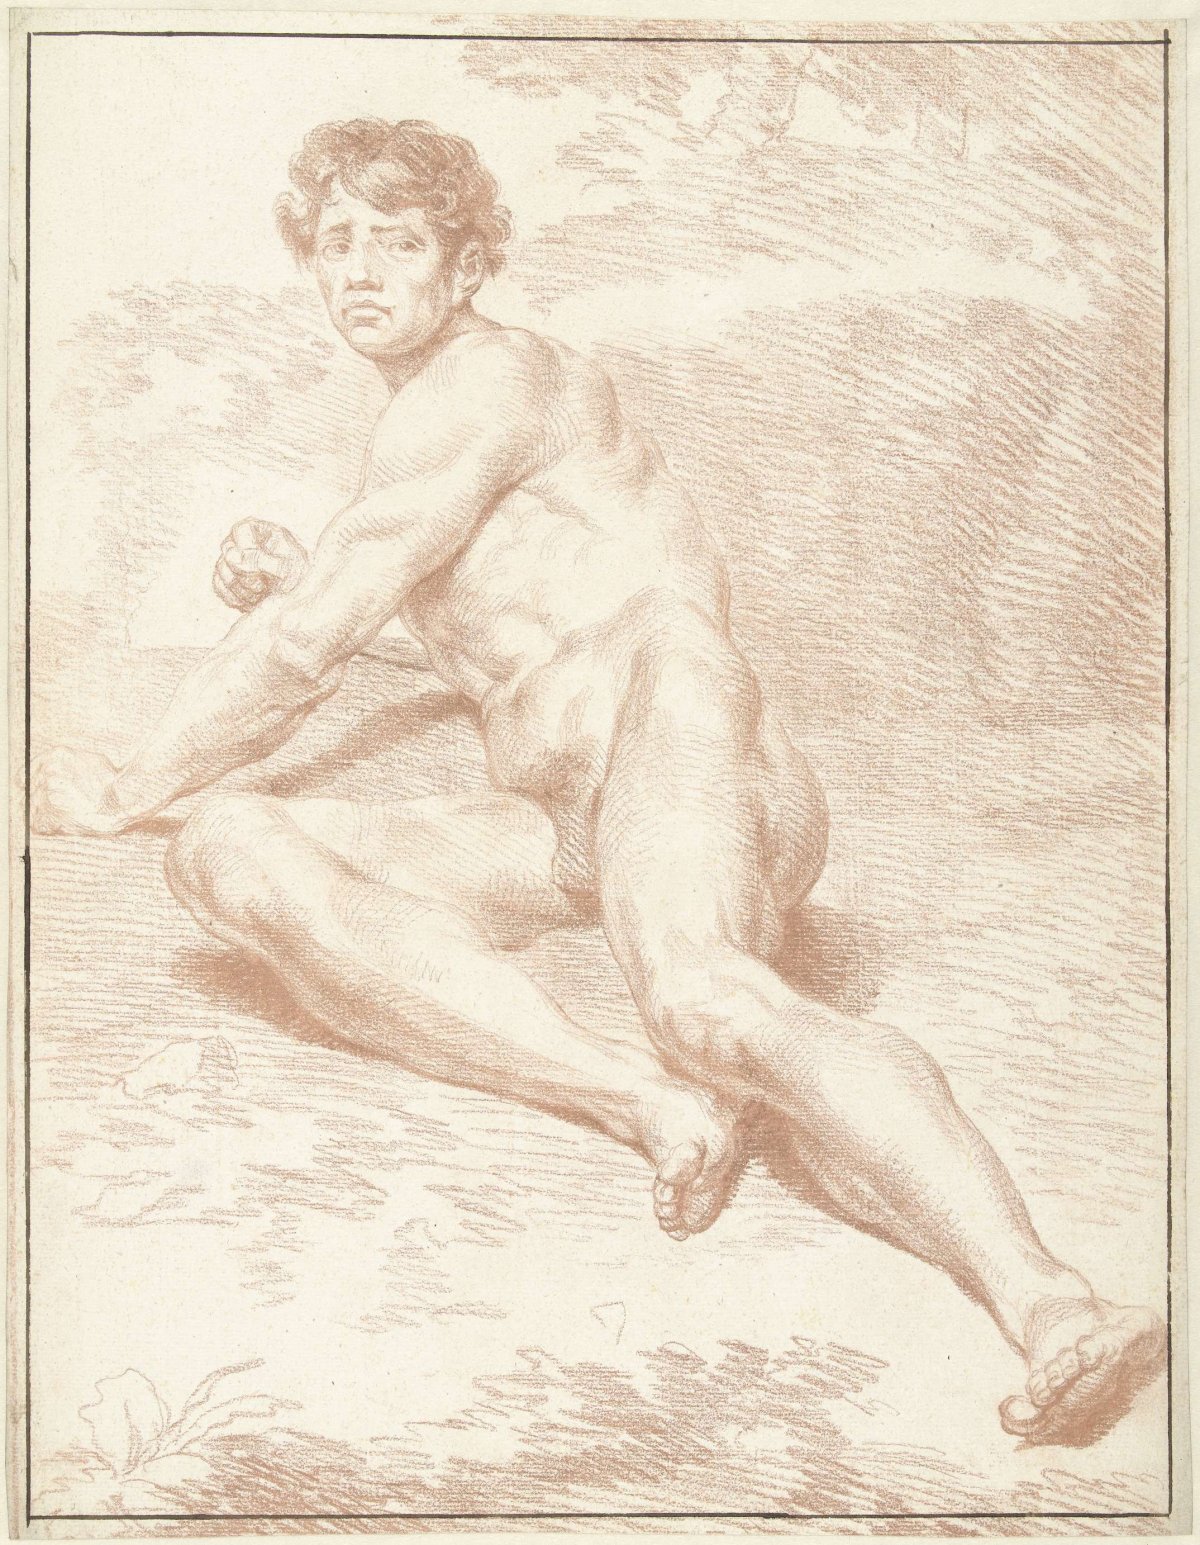 Mannelijk naakt, liggend, zich oprichtend, Louis Fabritius Dubourg, 1703 - 1775